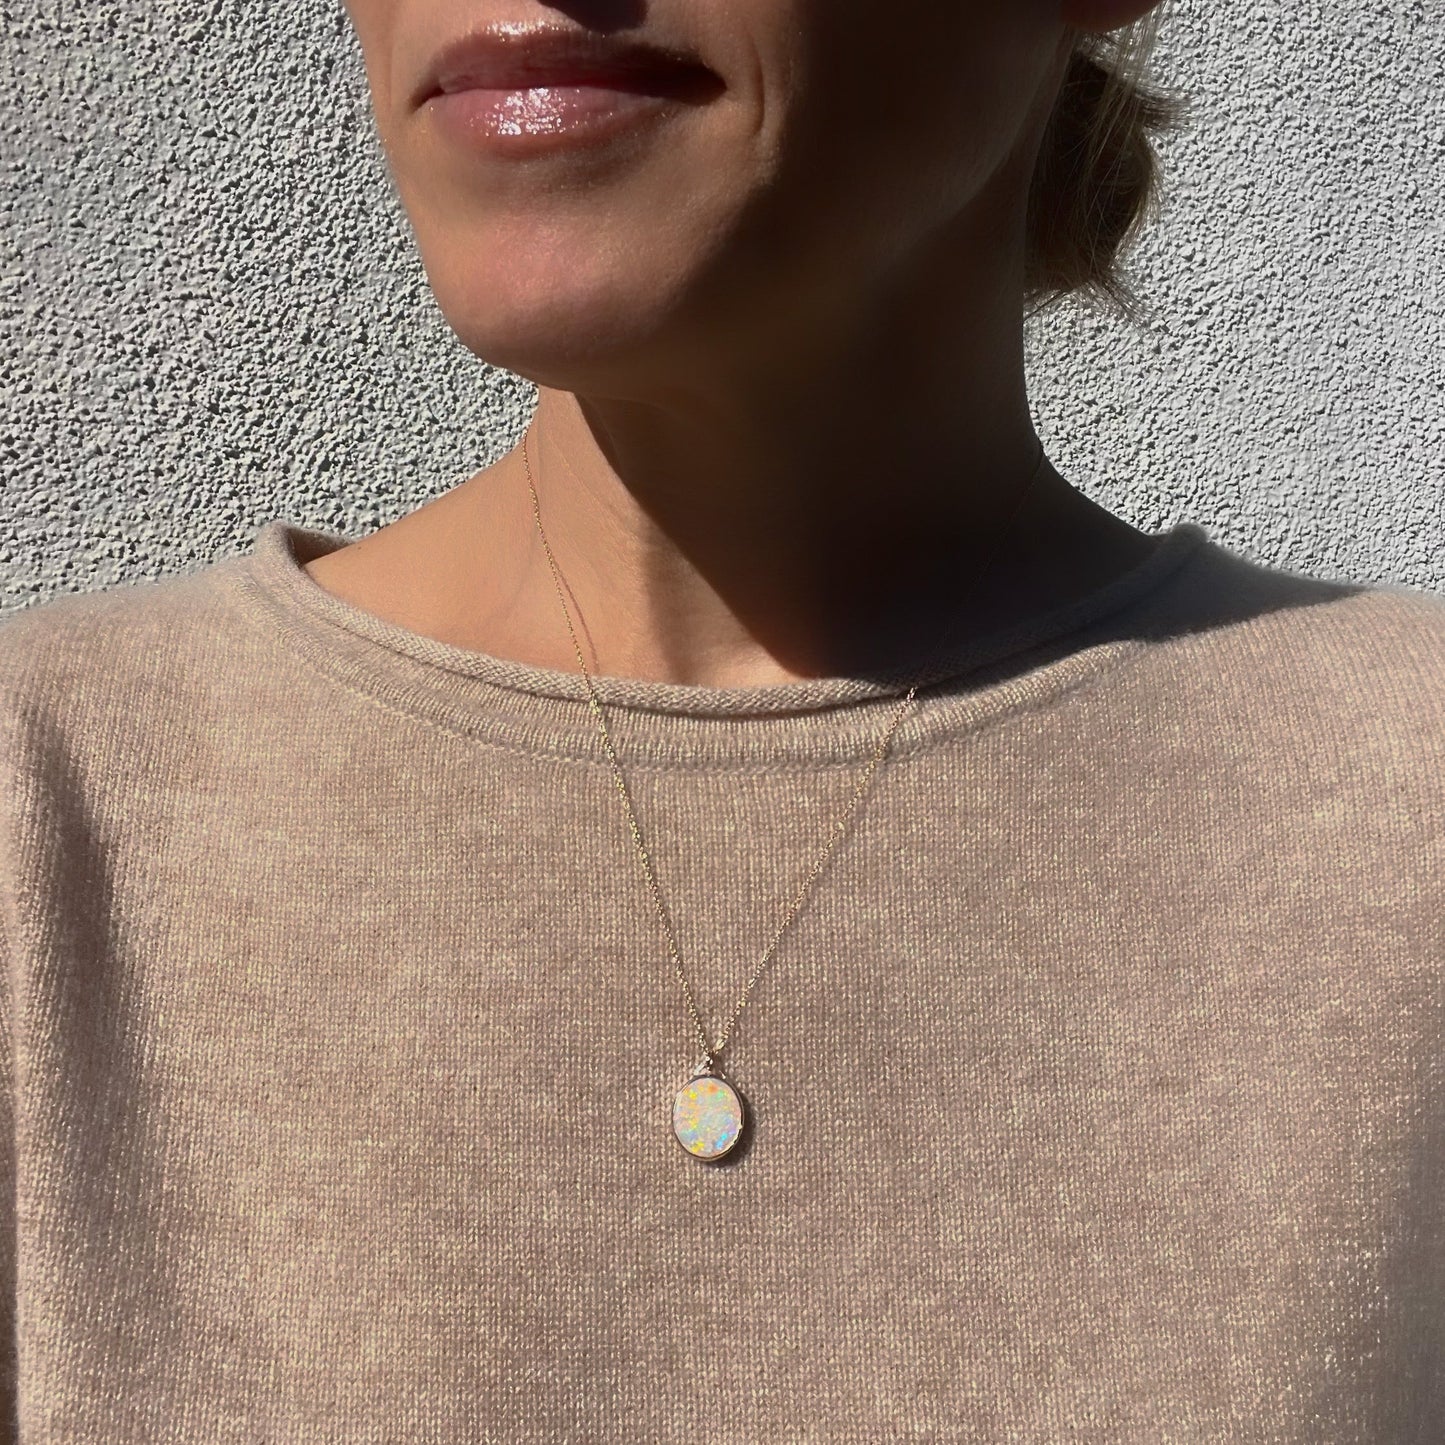 An Australian Opal Necklace by NIXIN Jewelry worn by a model. An oval opal pendant set in 14k rose gold.